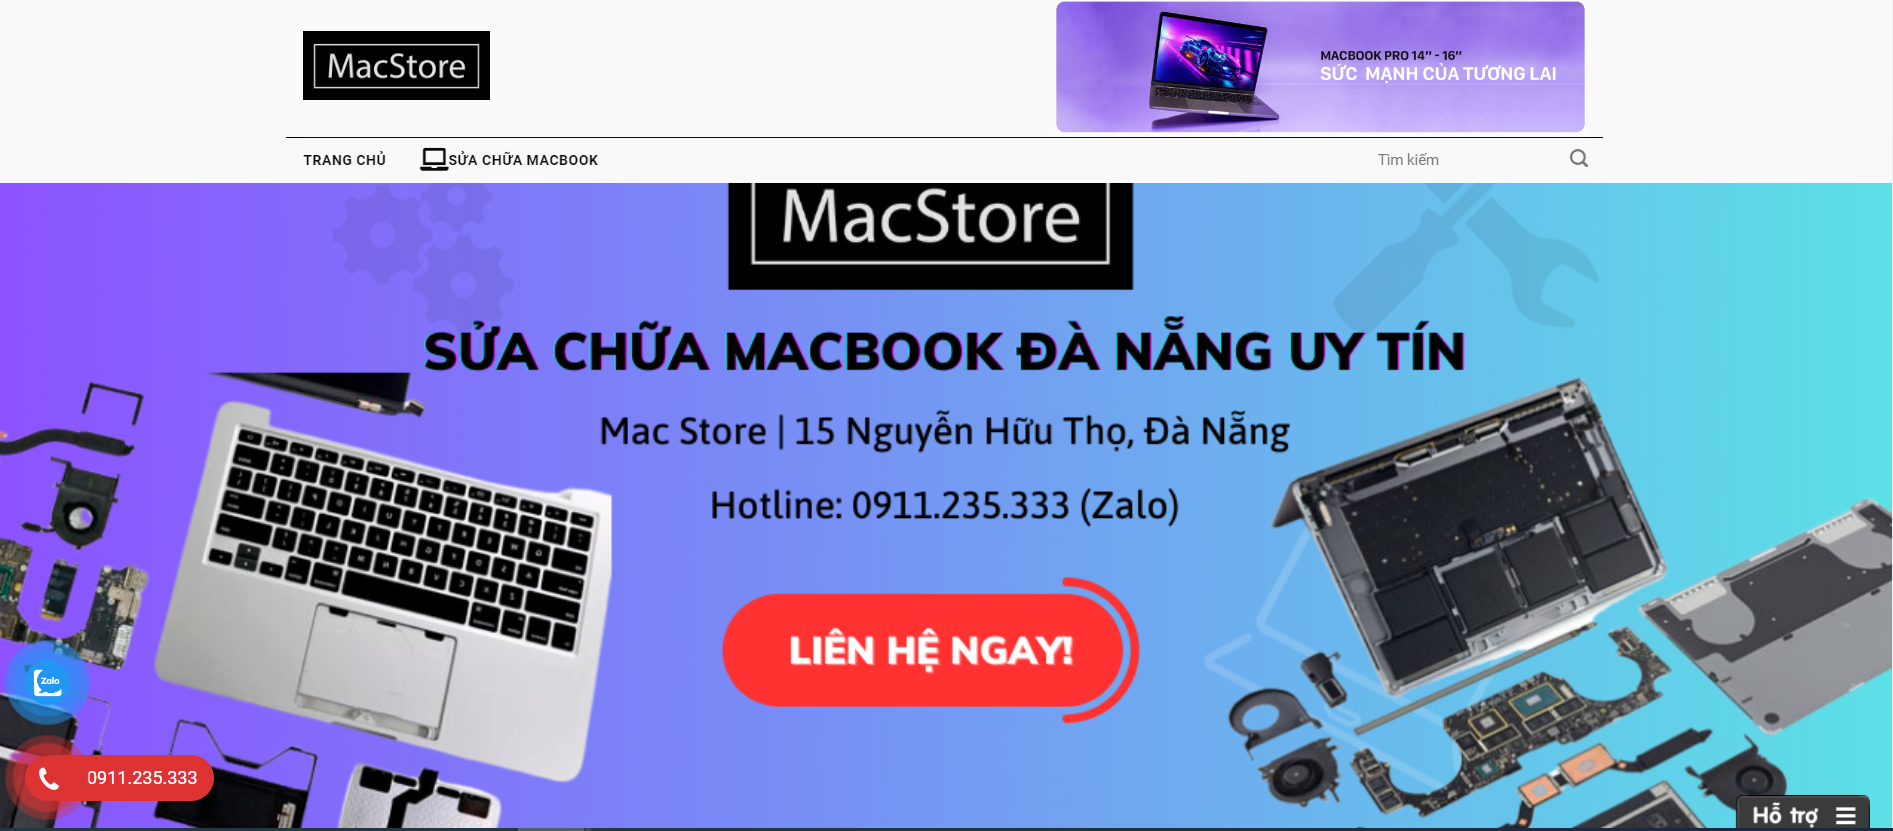 Trung tâm bảo hành - sửa chữa macbook tại Đà Nẵng